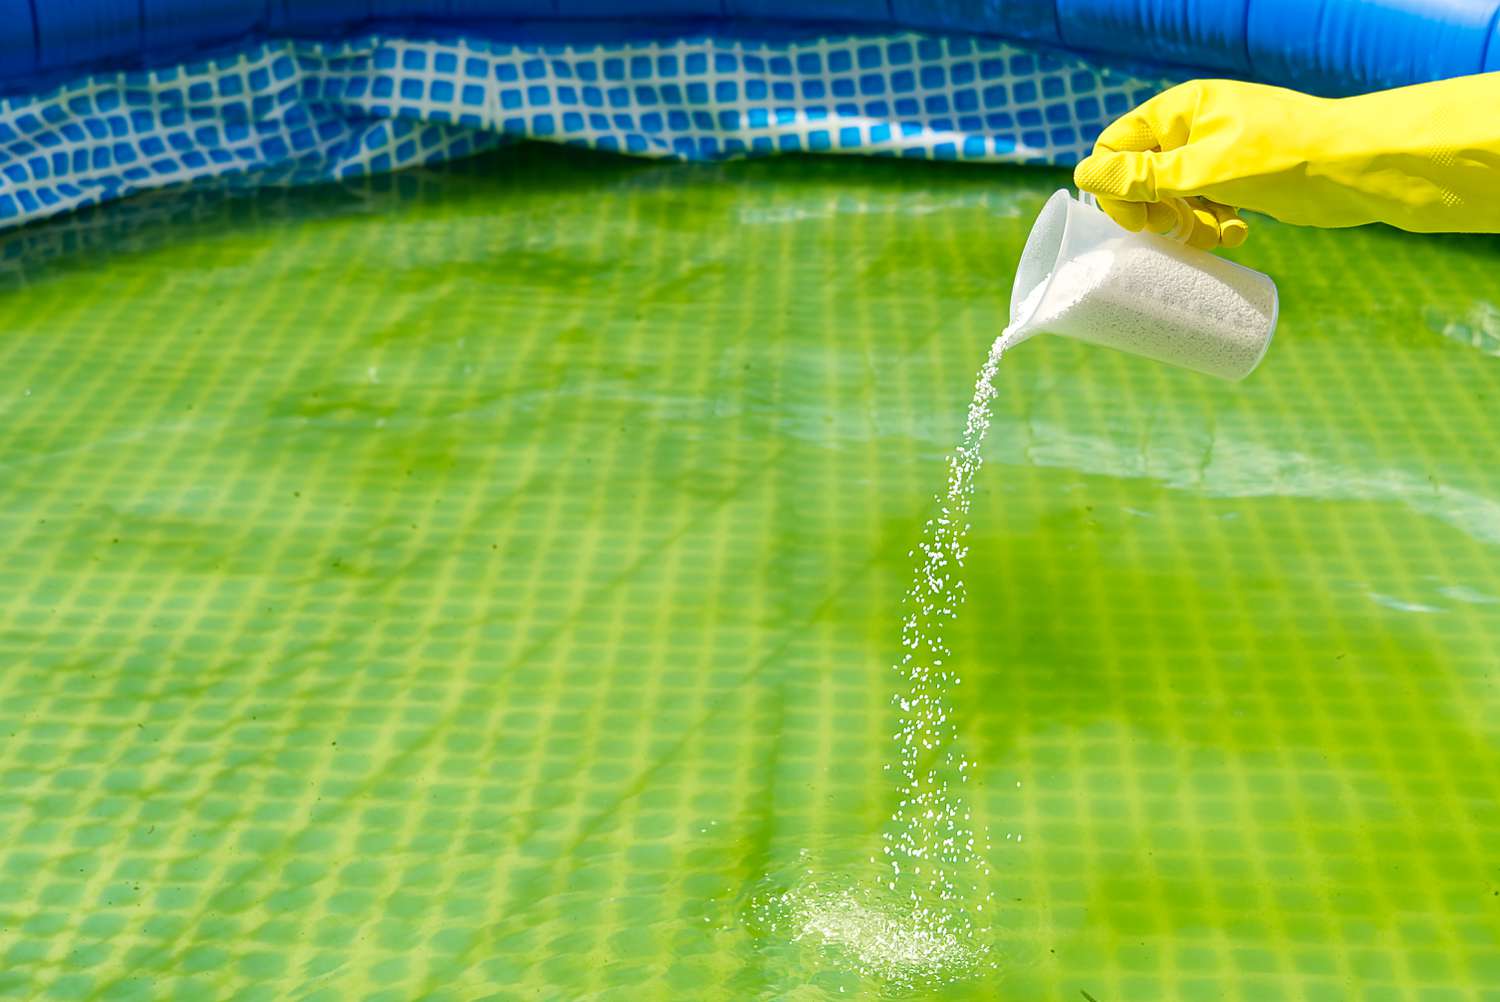 piscina de plástico com água verde